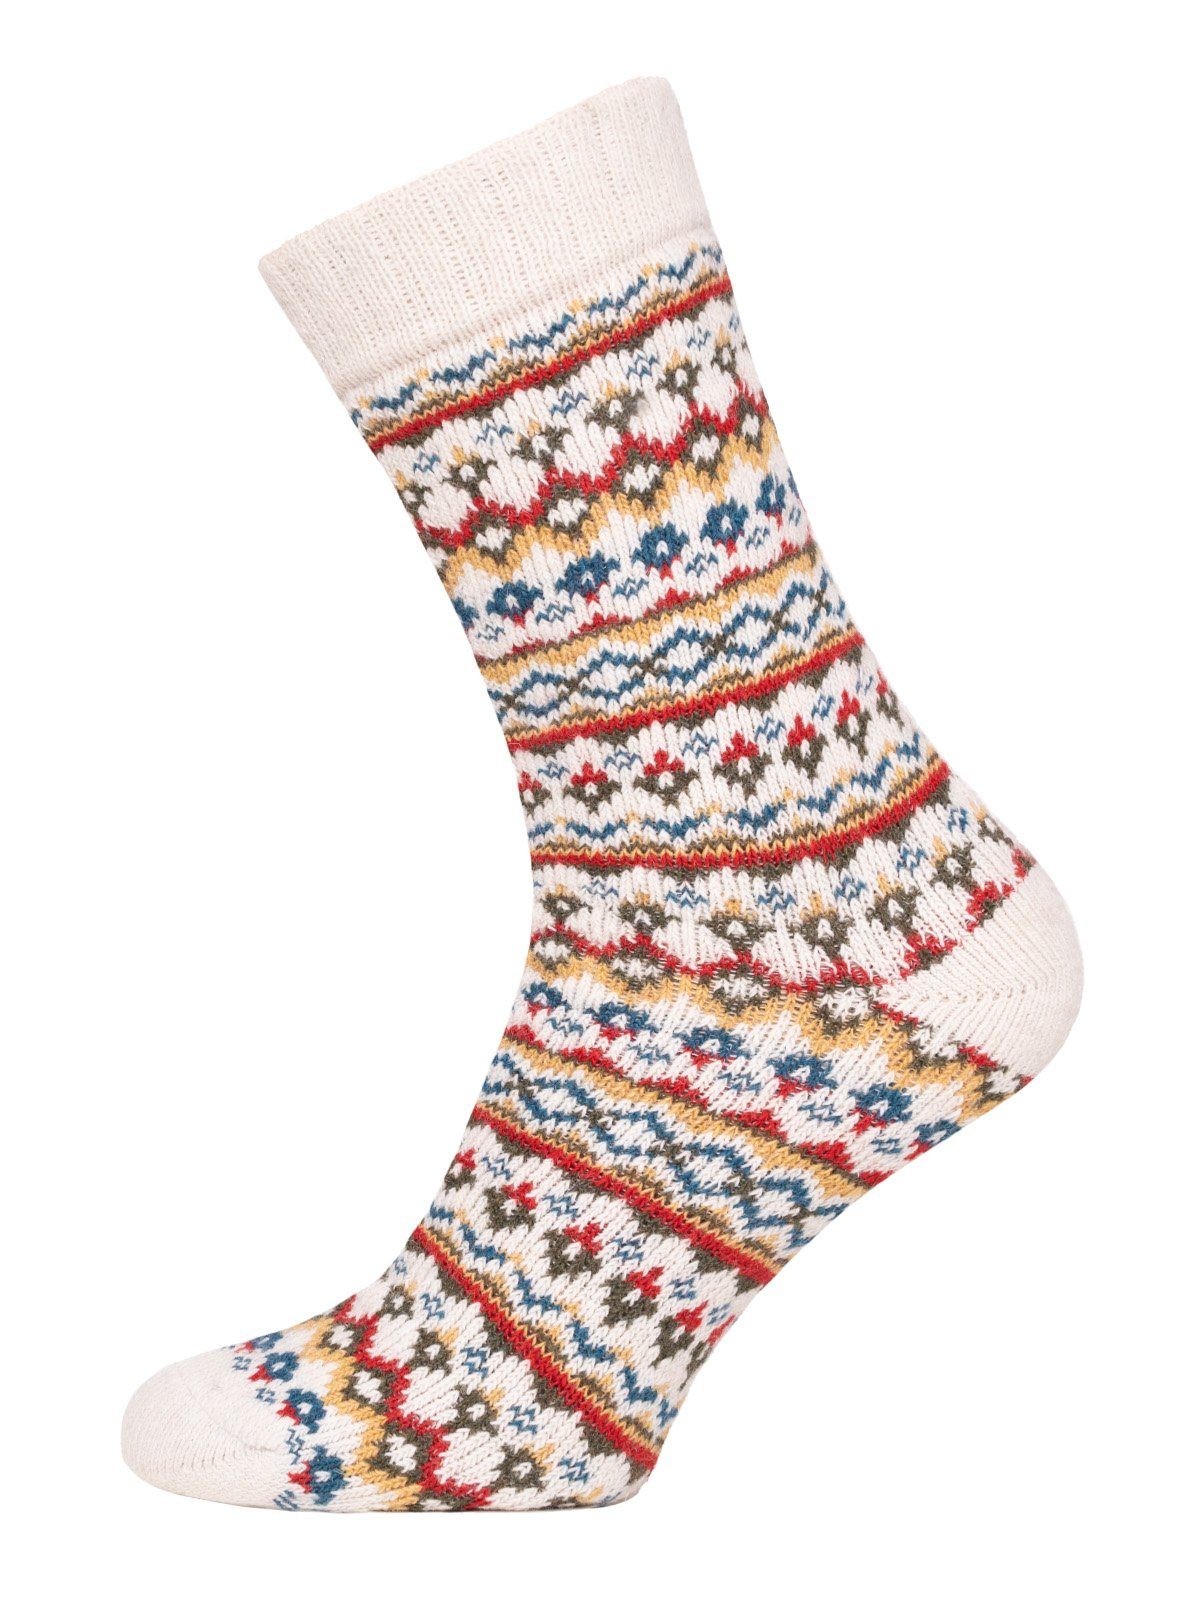 HomeOfSocks Socken Hygge Socken Dick Für Herren & Damen mit Wolle Dicke Socken Hyggelig Warm Mit Hohem 45% Wollanteil In Bunten Design Weiß